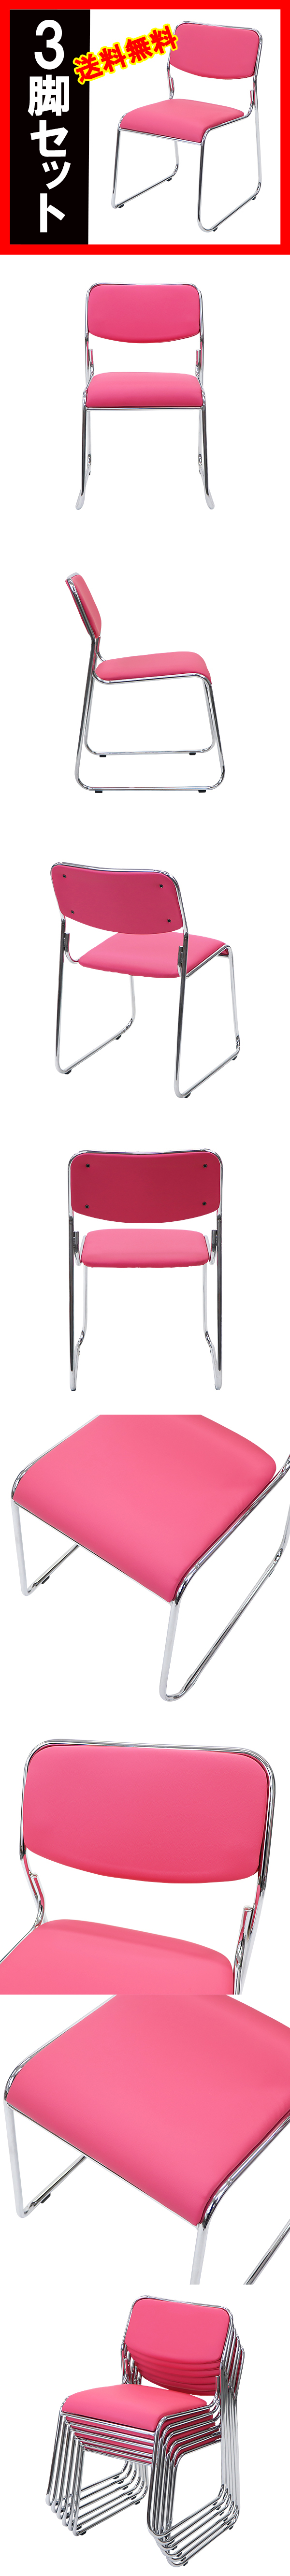 数量限定お得送料無料 新品 ミーティングチェア スタッキングチェア パイプ椅子 会議椅子 3脚セット ピンク パイプイス